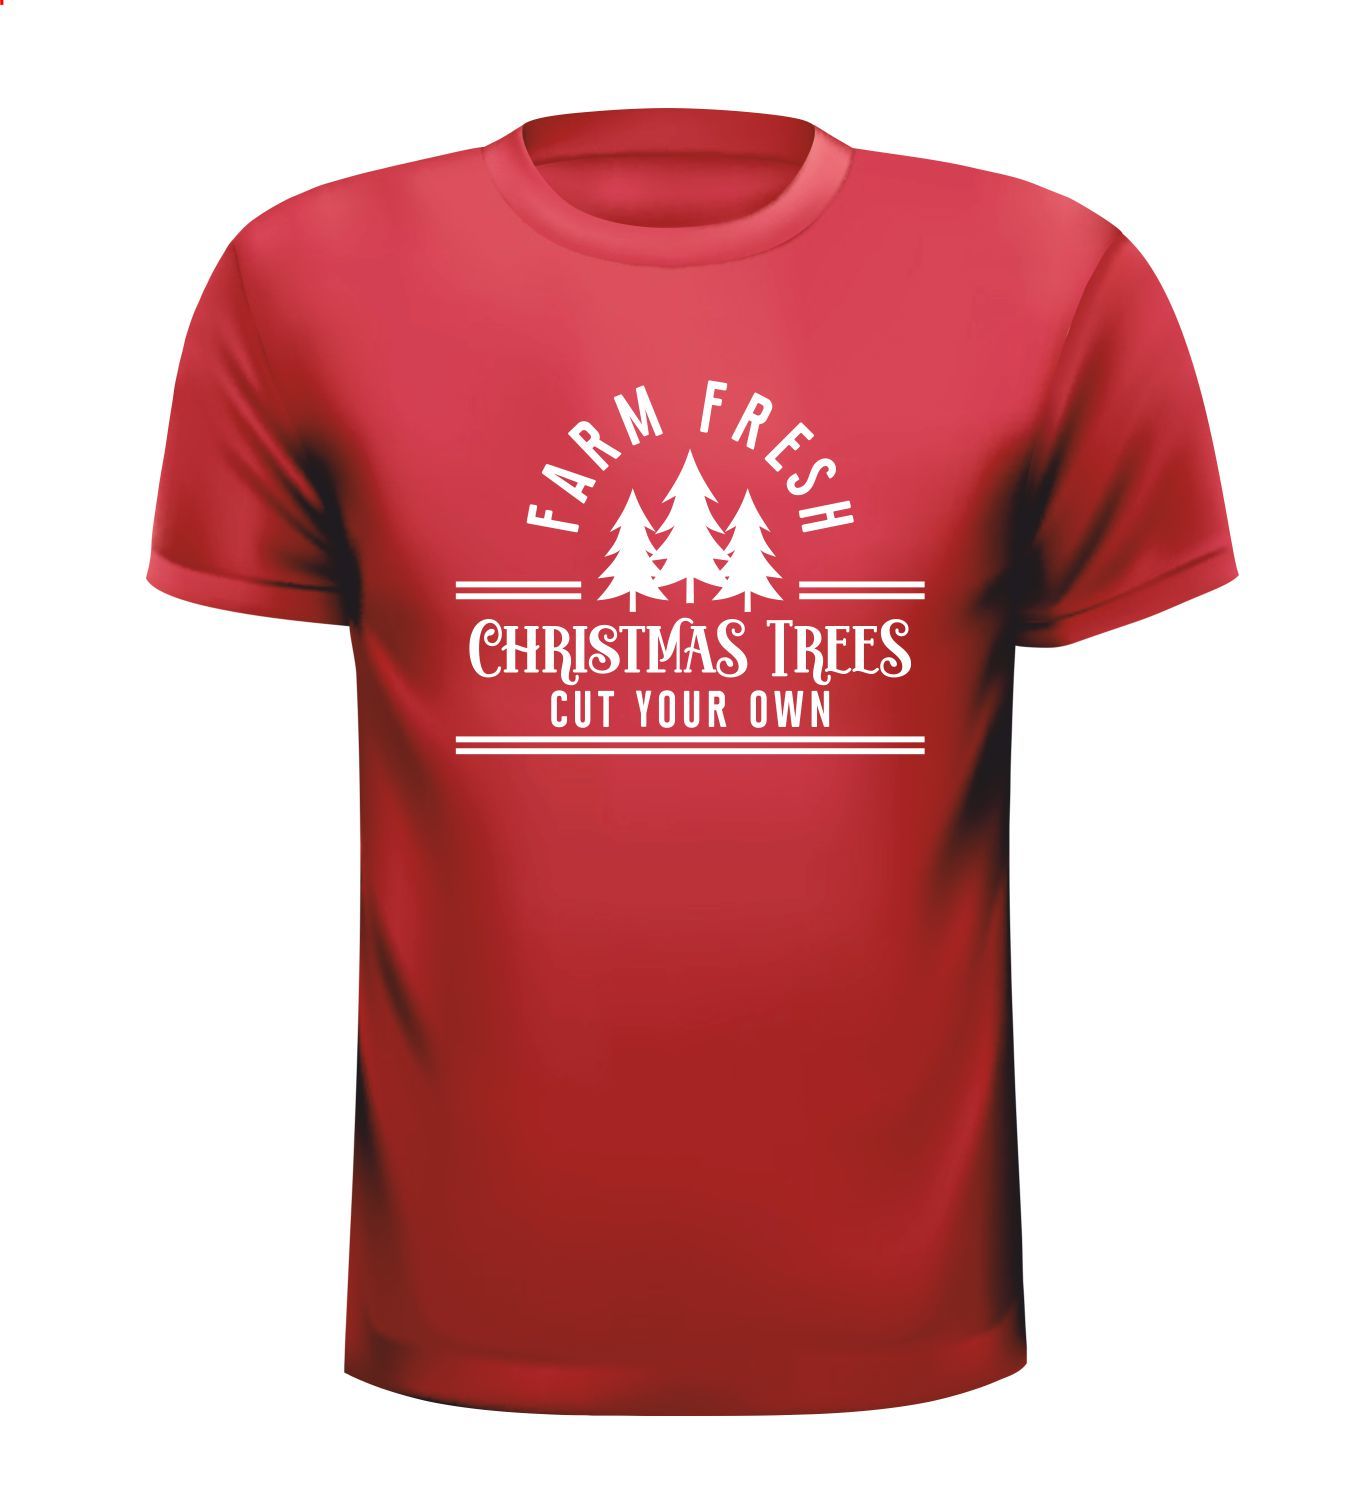 T-shirt farm fresh Christmas trees